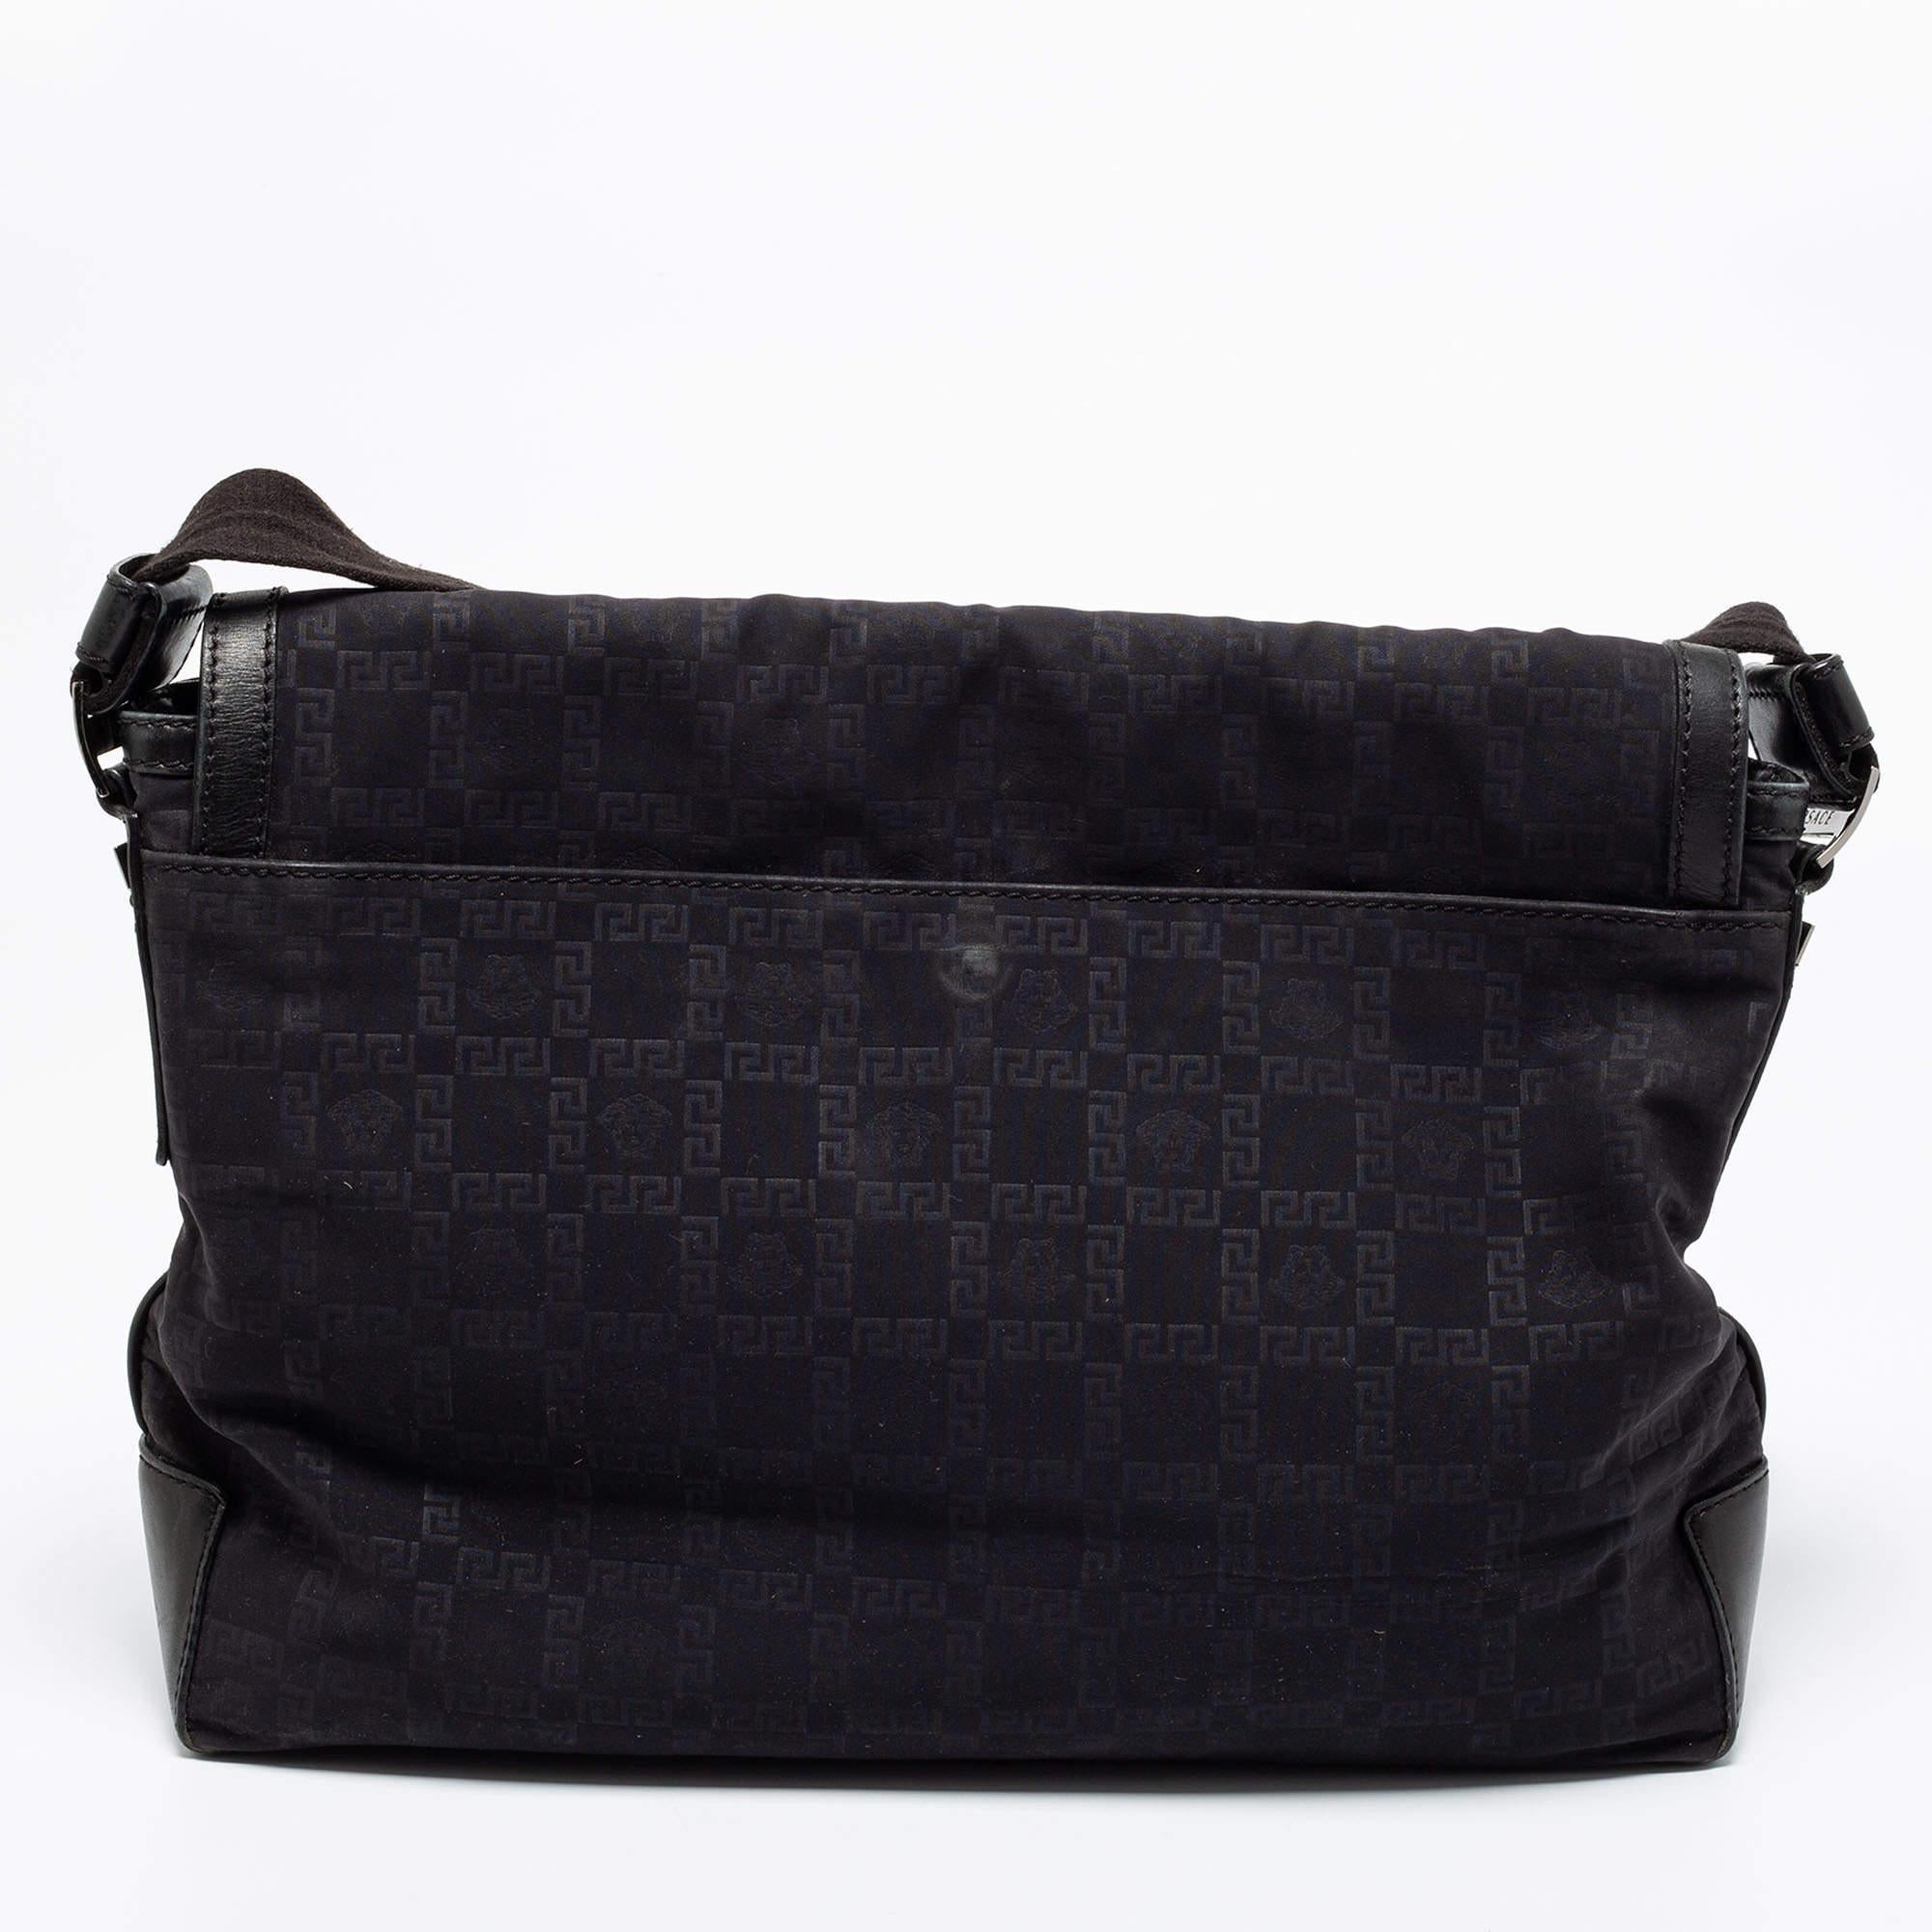 Diese schwarze Tasche von Versace ist ein praktisches Accessoire, das sich auf Reisen oder bei täglichen Besorgungen als äußerst nützlich erweisen wird. Sie ist aus charakteristischem Nylon gefertigt und verfügt über einen Lederboden, einen langen